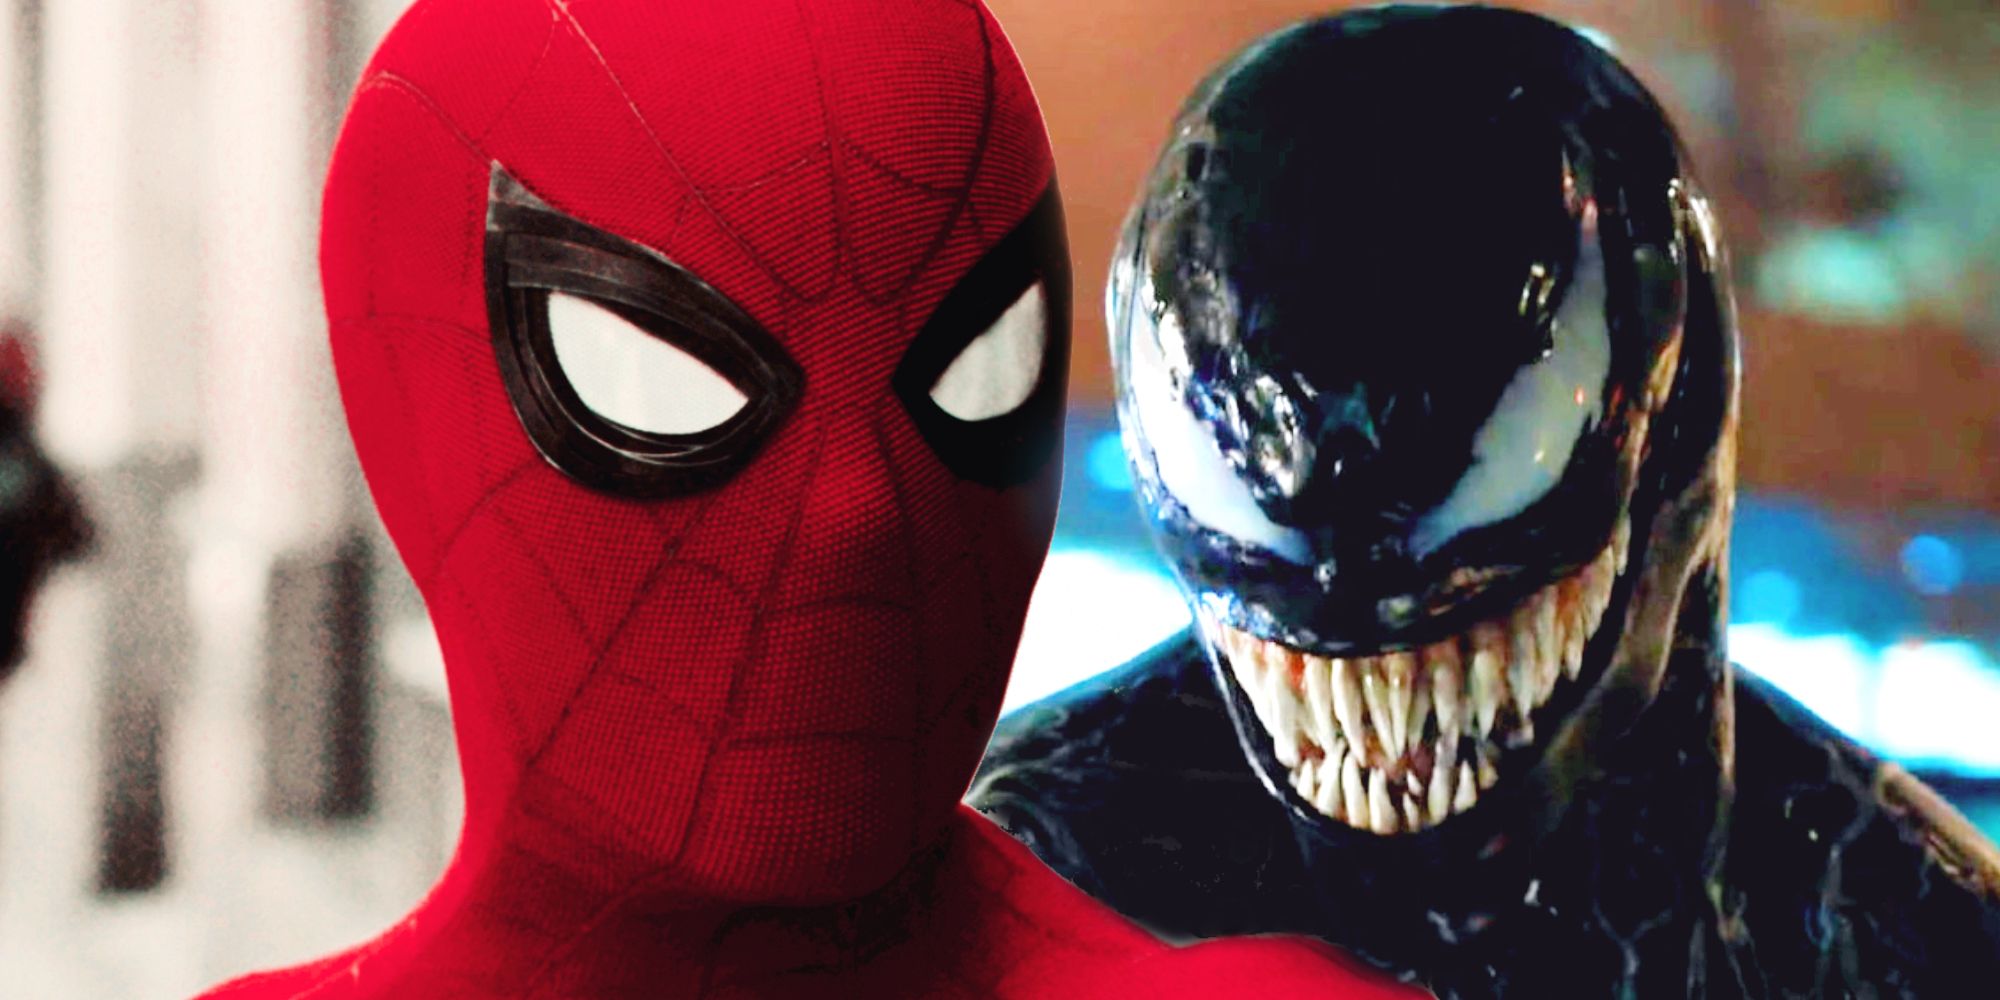 En Venom/Spider-Man crossover-film skulle missa en enorm del av deras berättelse